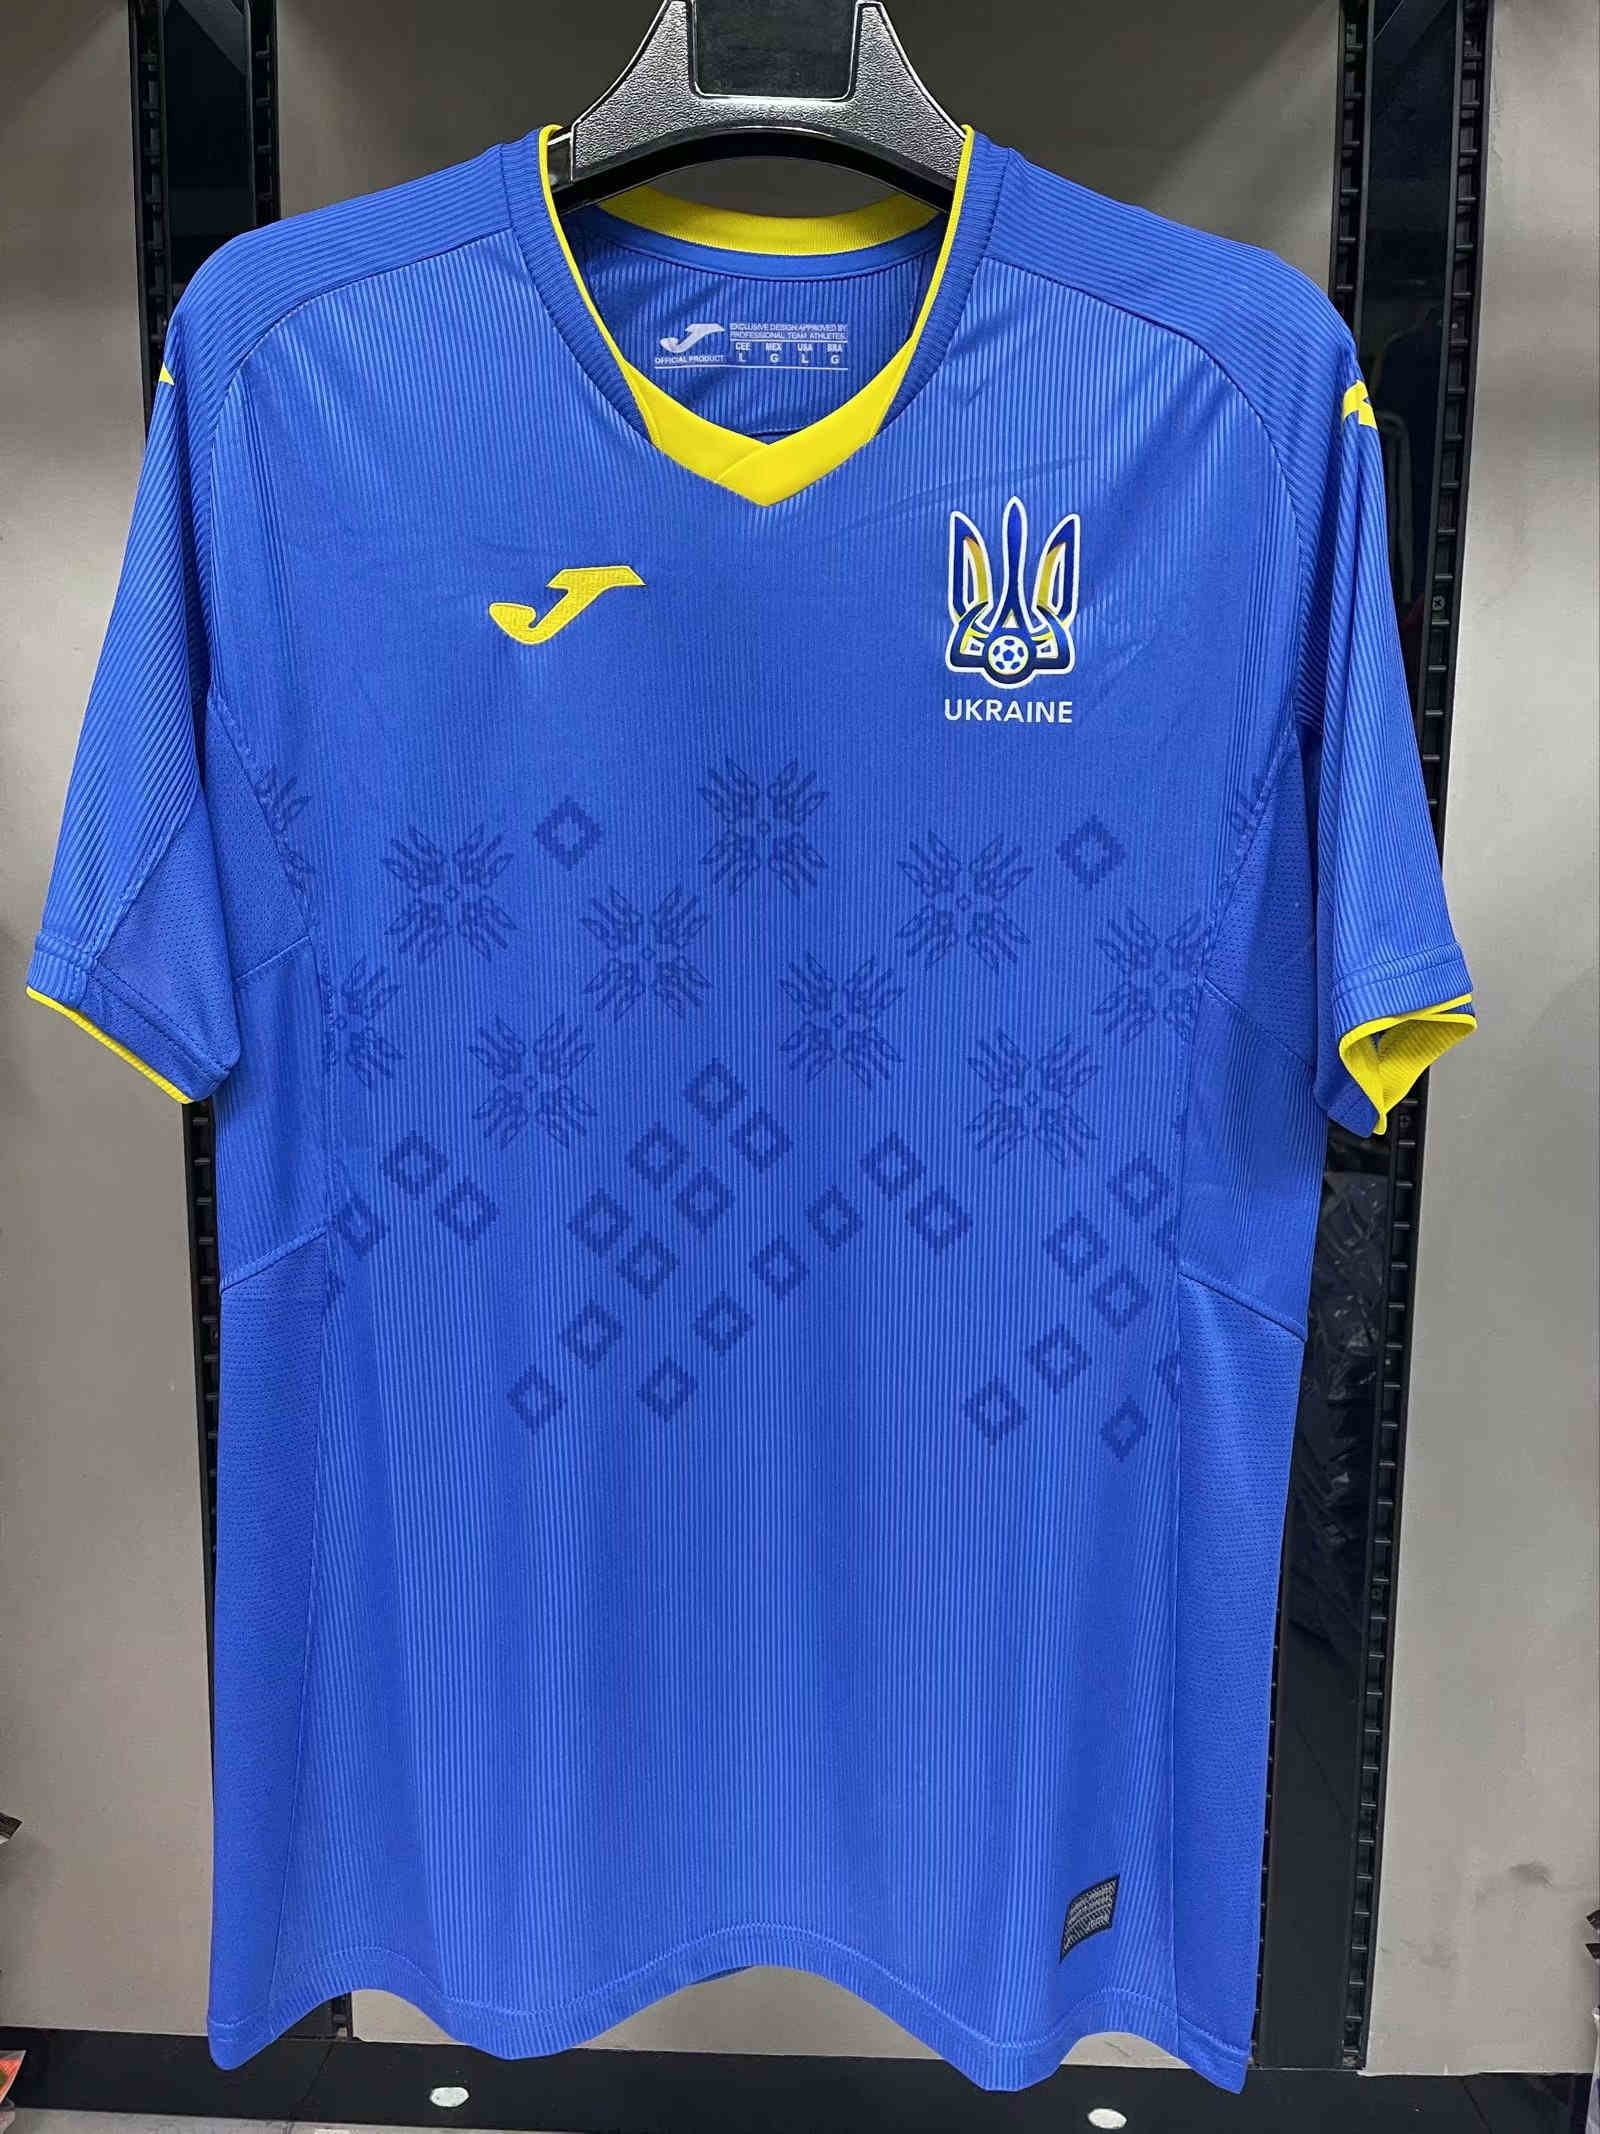 2021 Ukraine away jersey